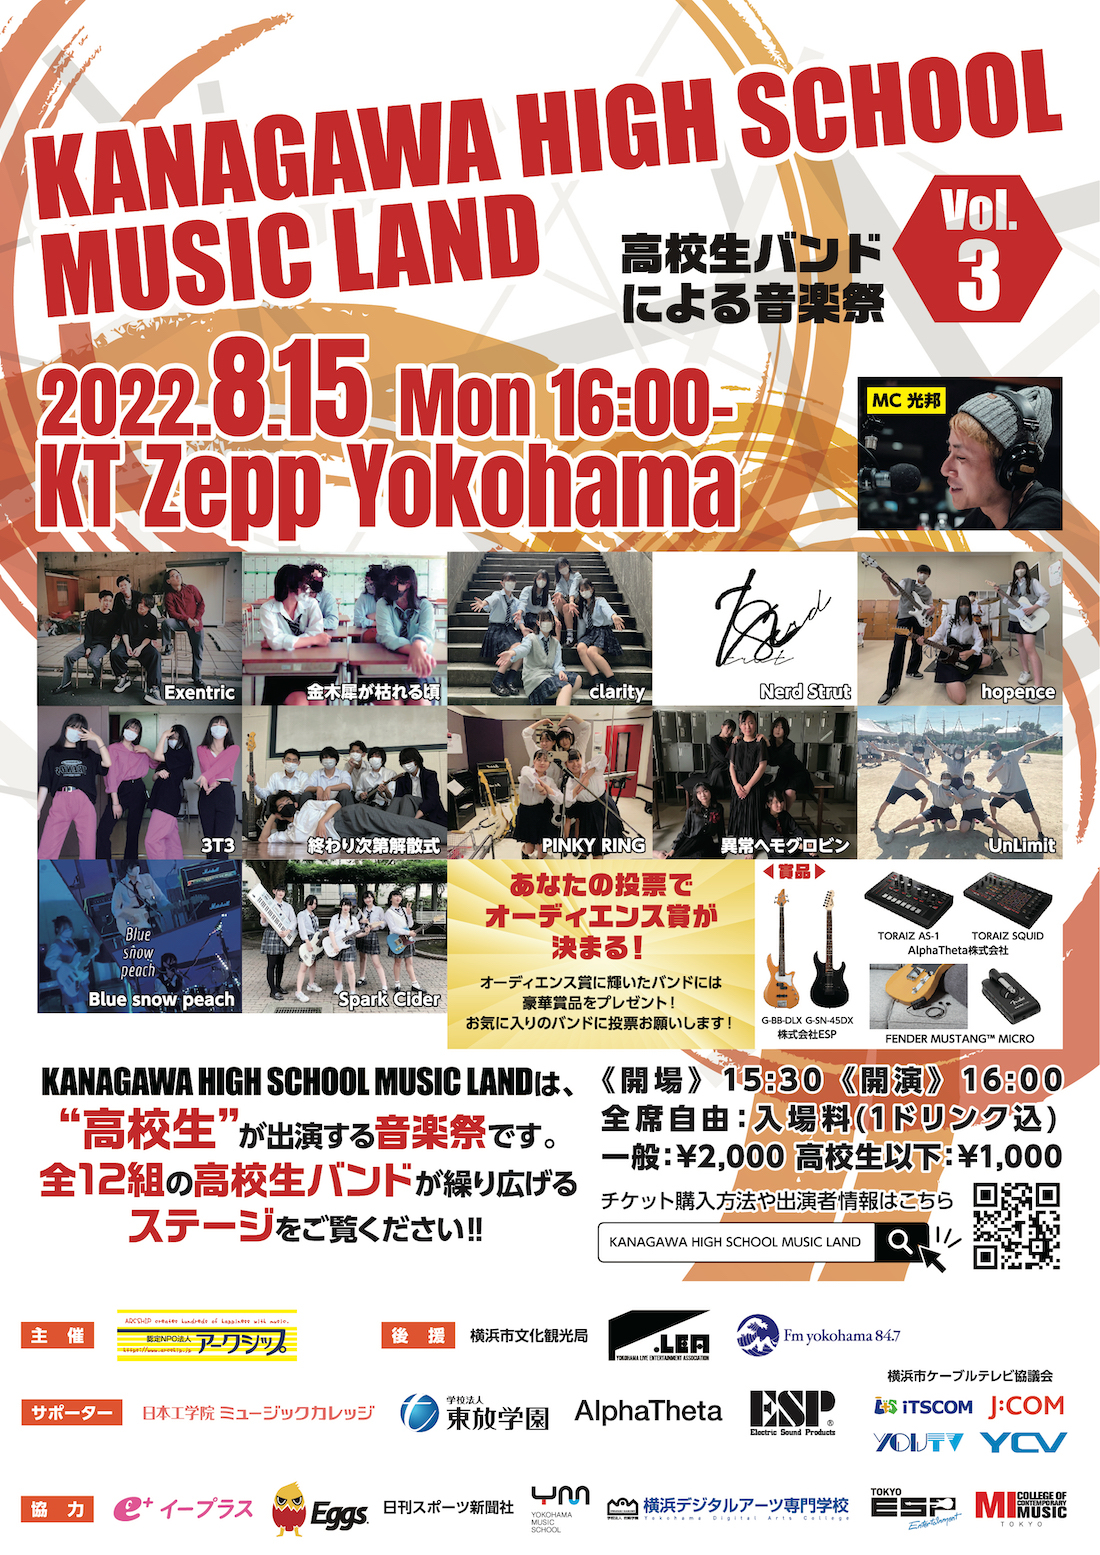 『KANAGAWA HIGH SCHOOL MUSIC LAND』